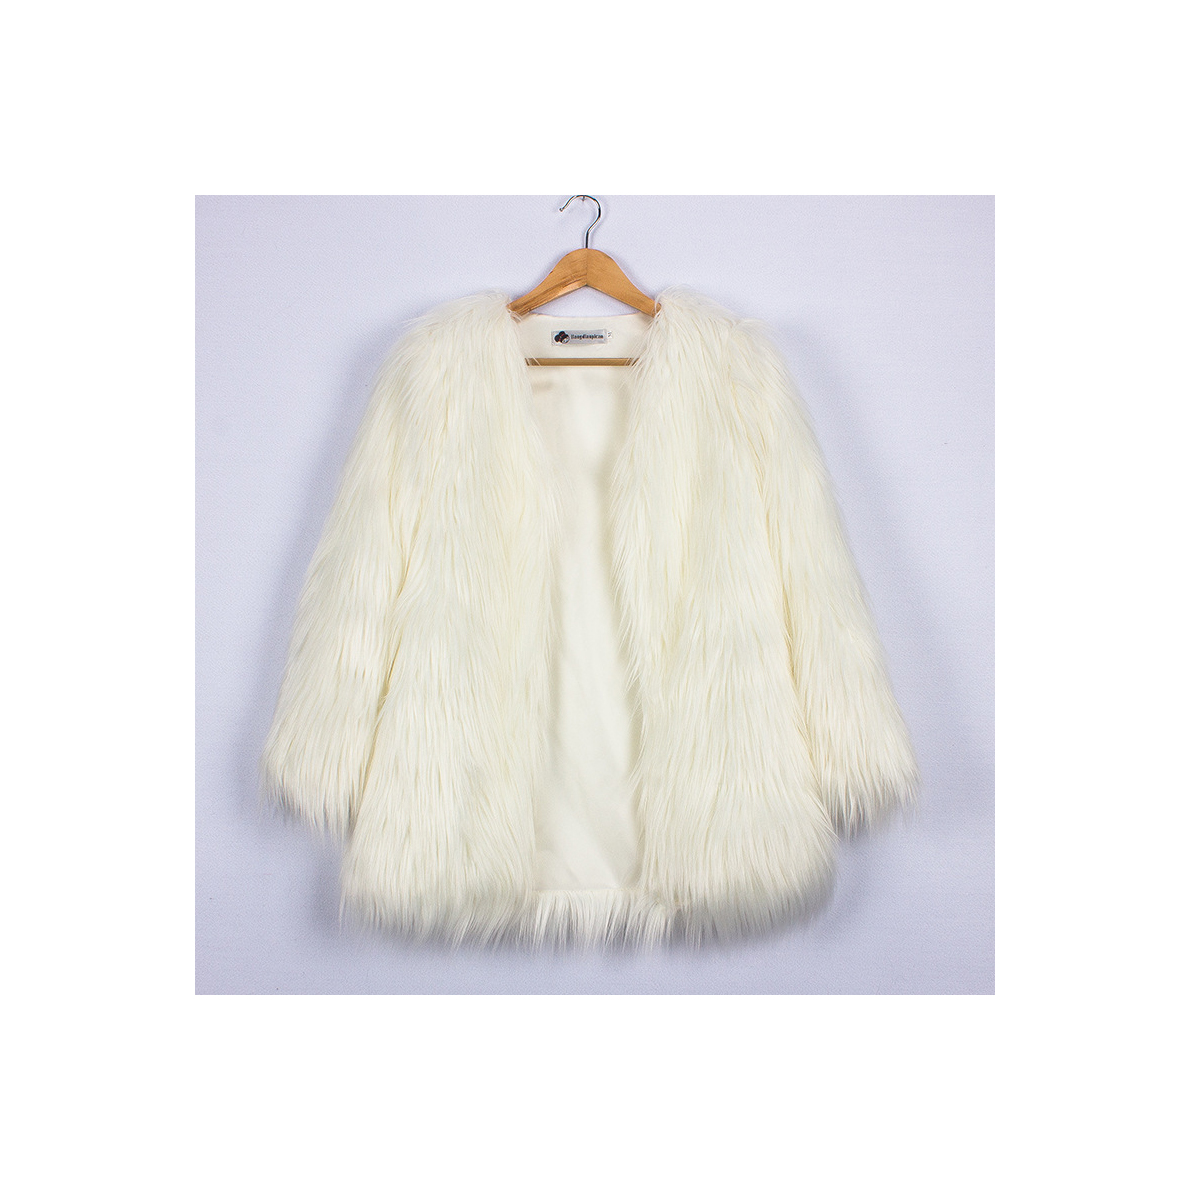 Plus Size Women Fluffy Faux Fur Coats Long Sleeve Winter Warm Long Jackets Female Outerwear off white